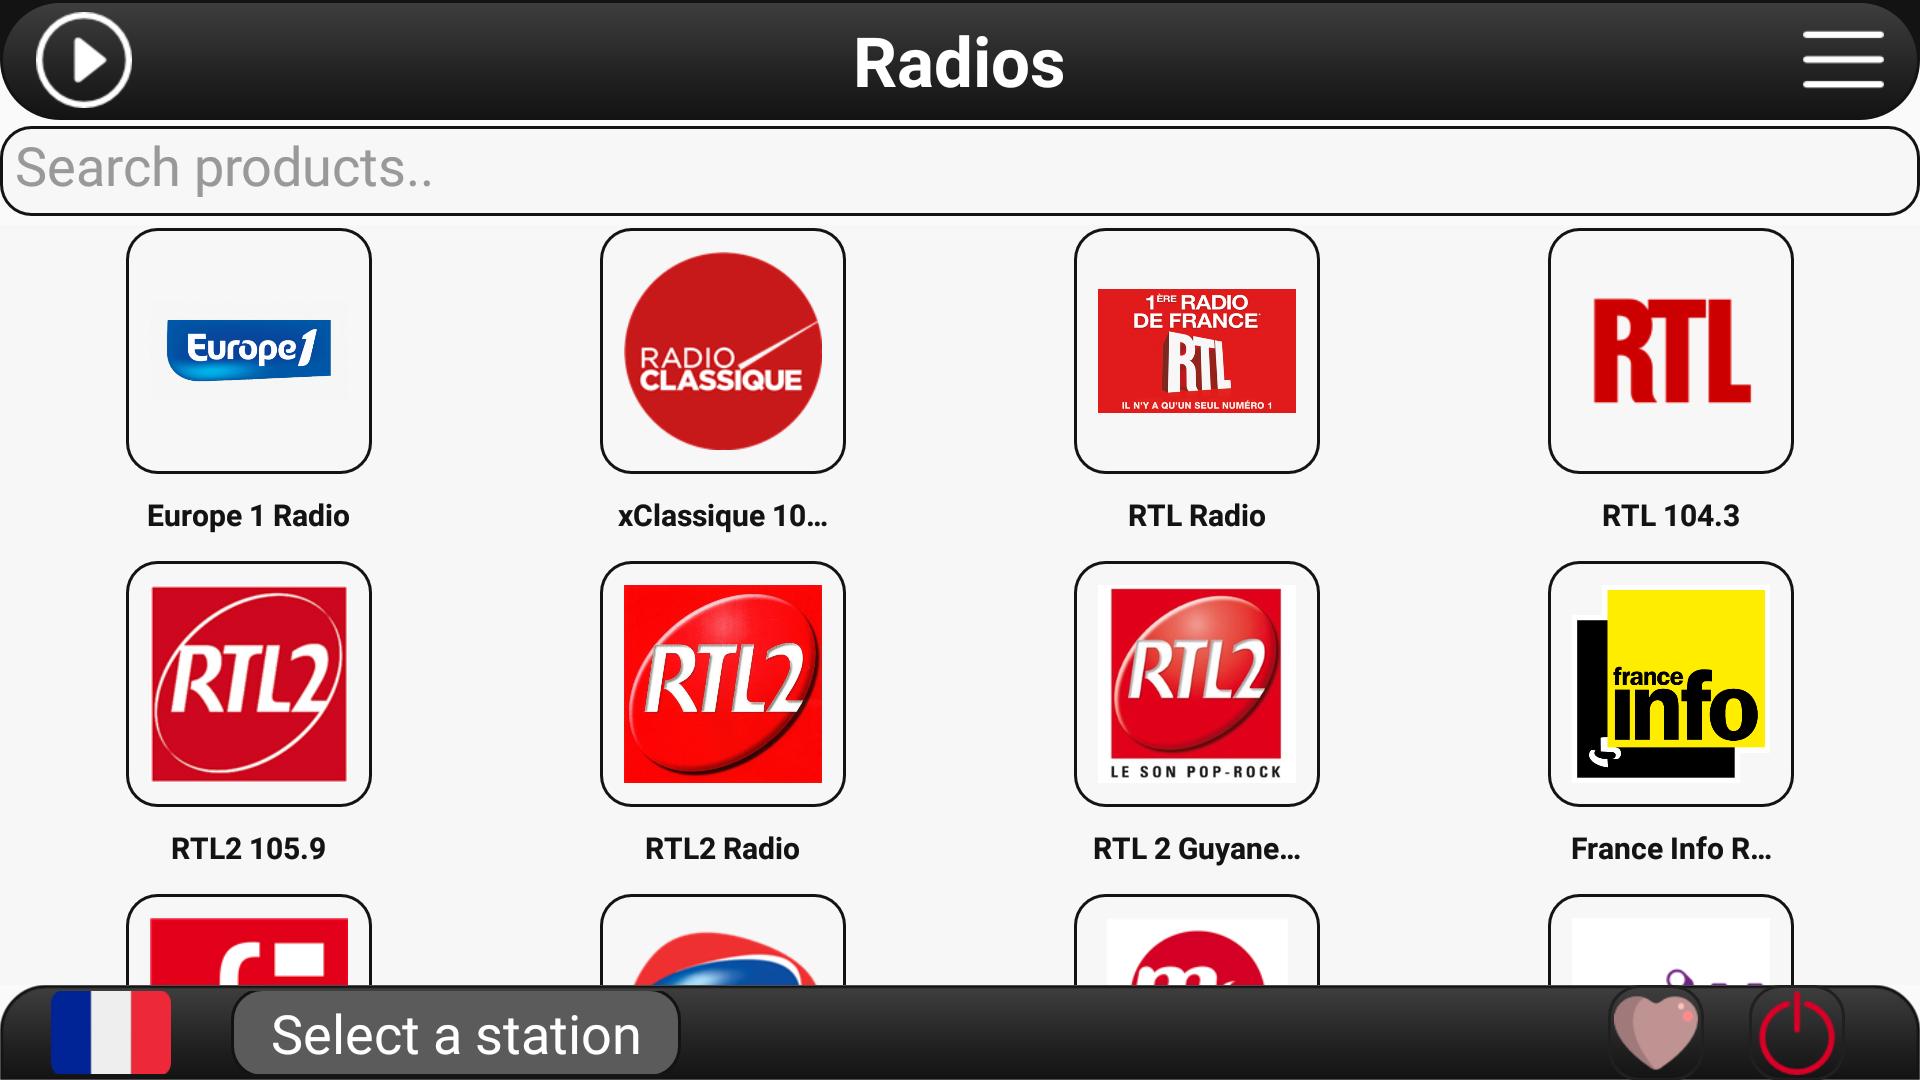 RTL радио. Радио богатырь ФМ. Radio Europe 1. Хф радио ФМ. Радио фм нижневартовск